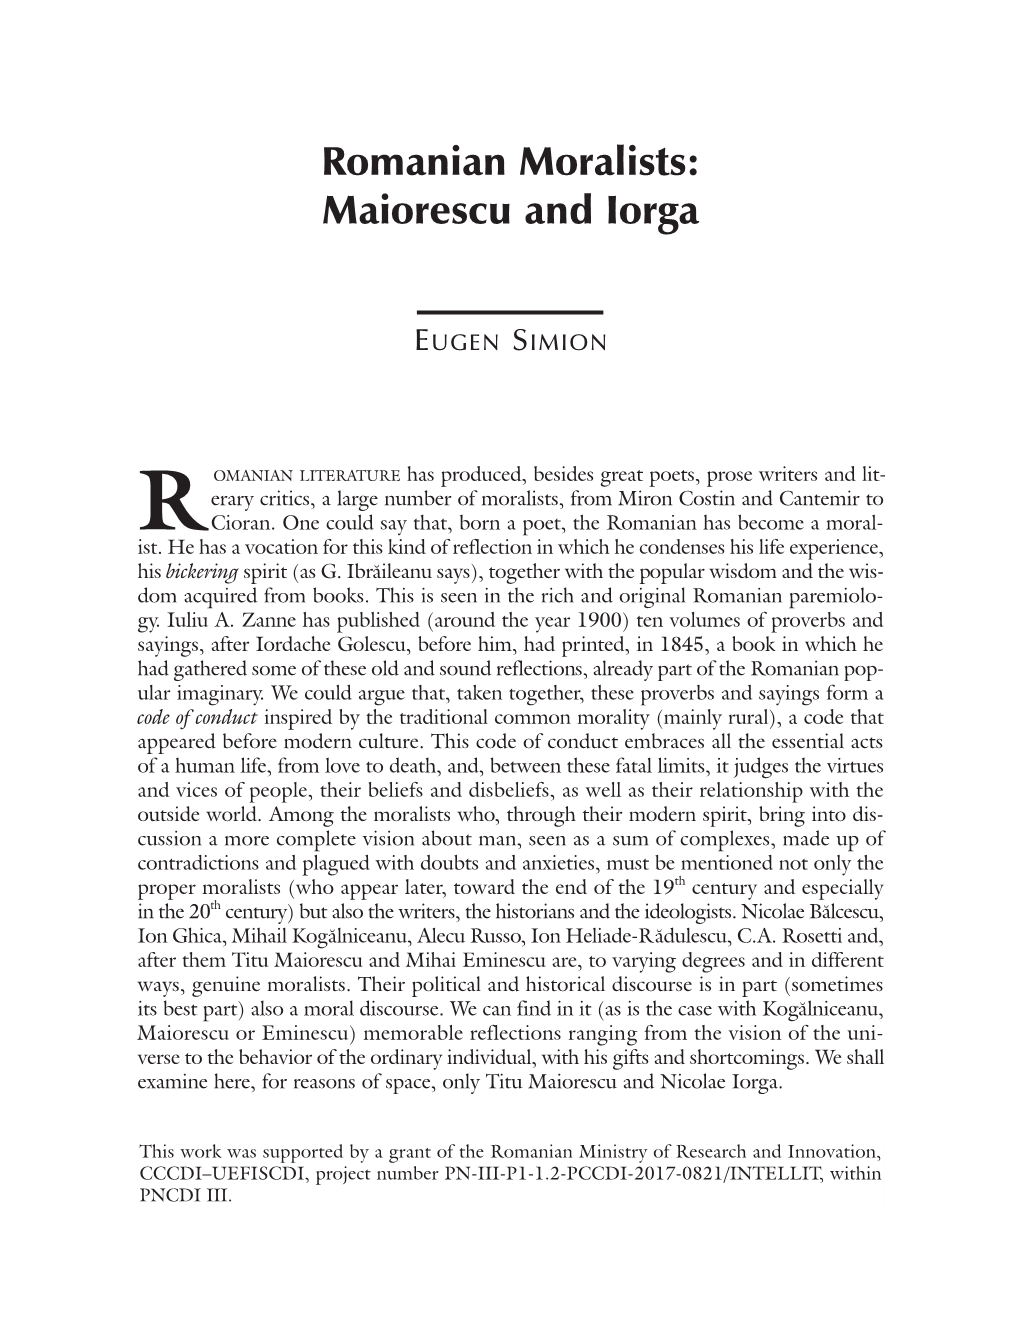 Romanian Moralists: Maiorescu and Iorga